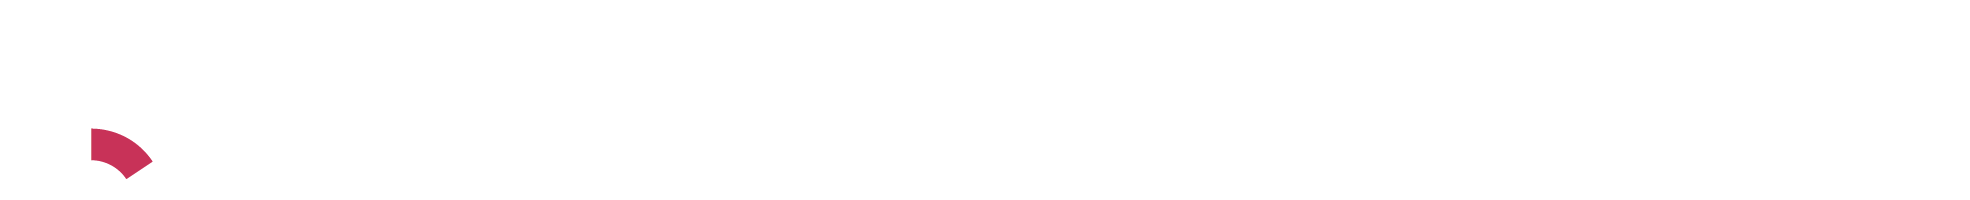 Qompas Masterkeuze footer logo